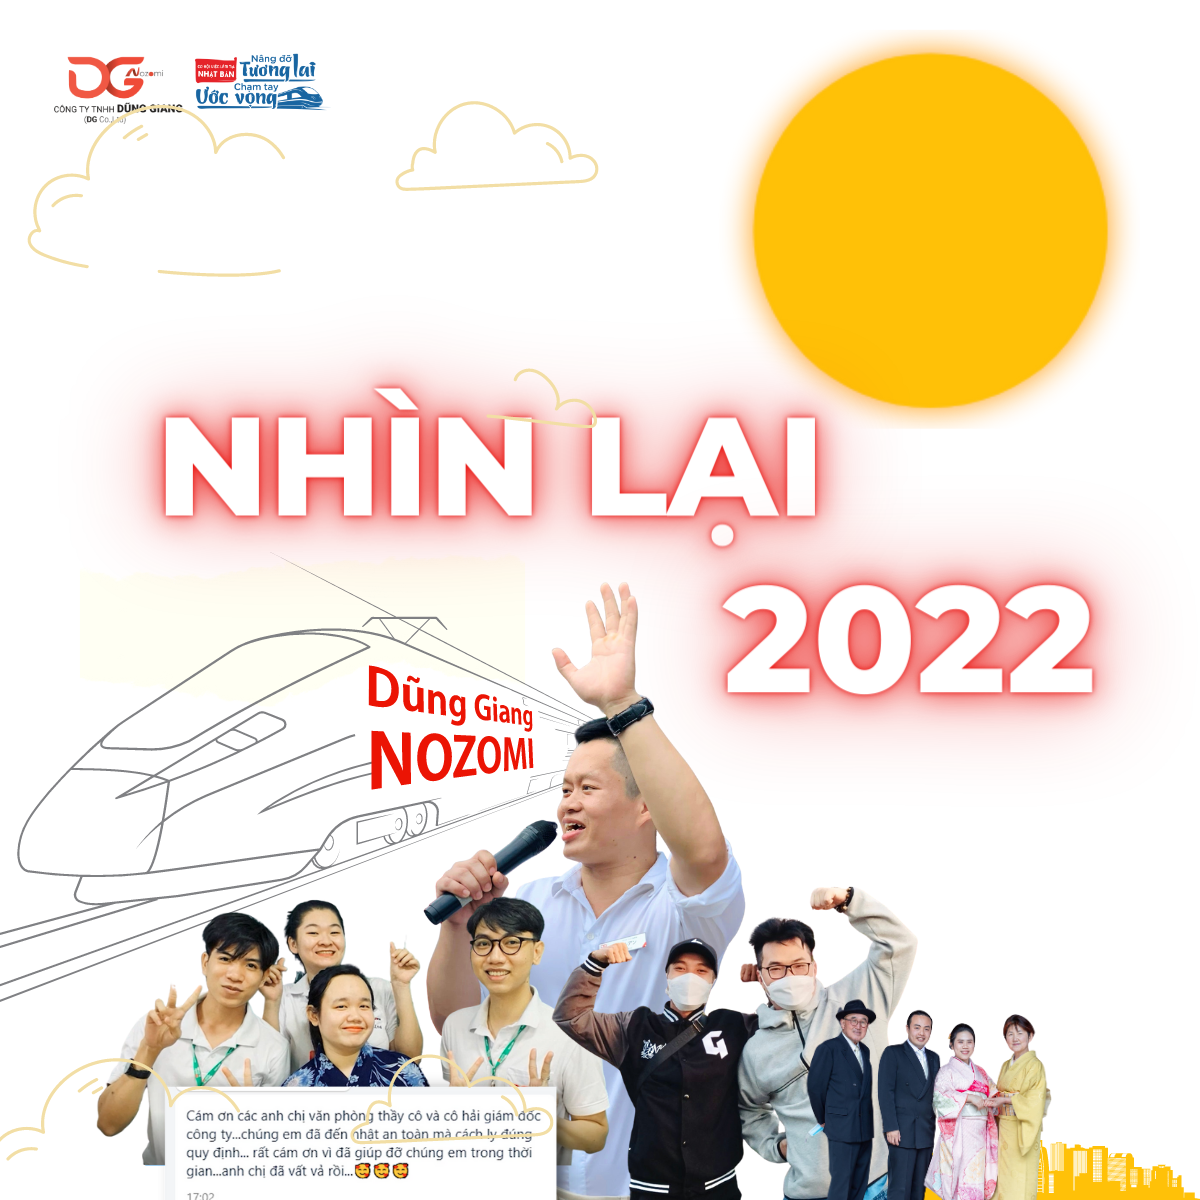 NHÌN LẠI 2022 – Năm của sự đổi mới, đồng hành và ước vọng đong đầy